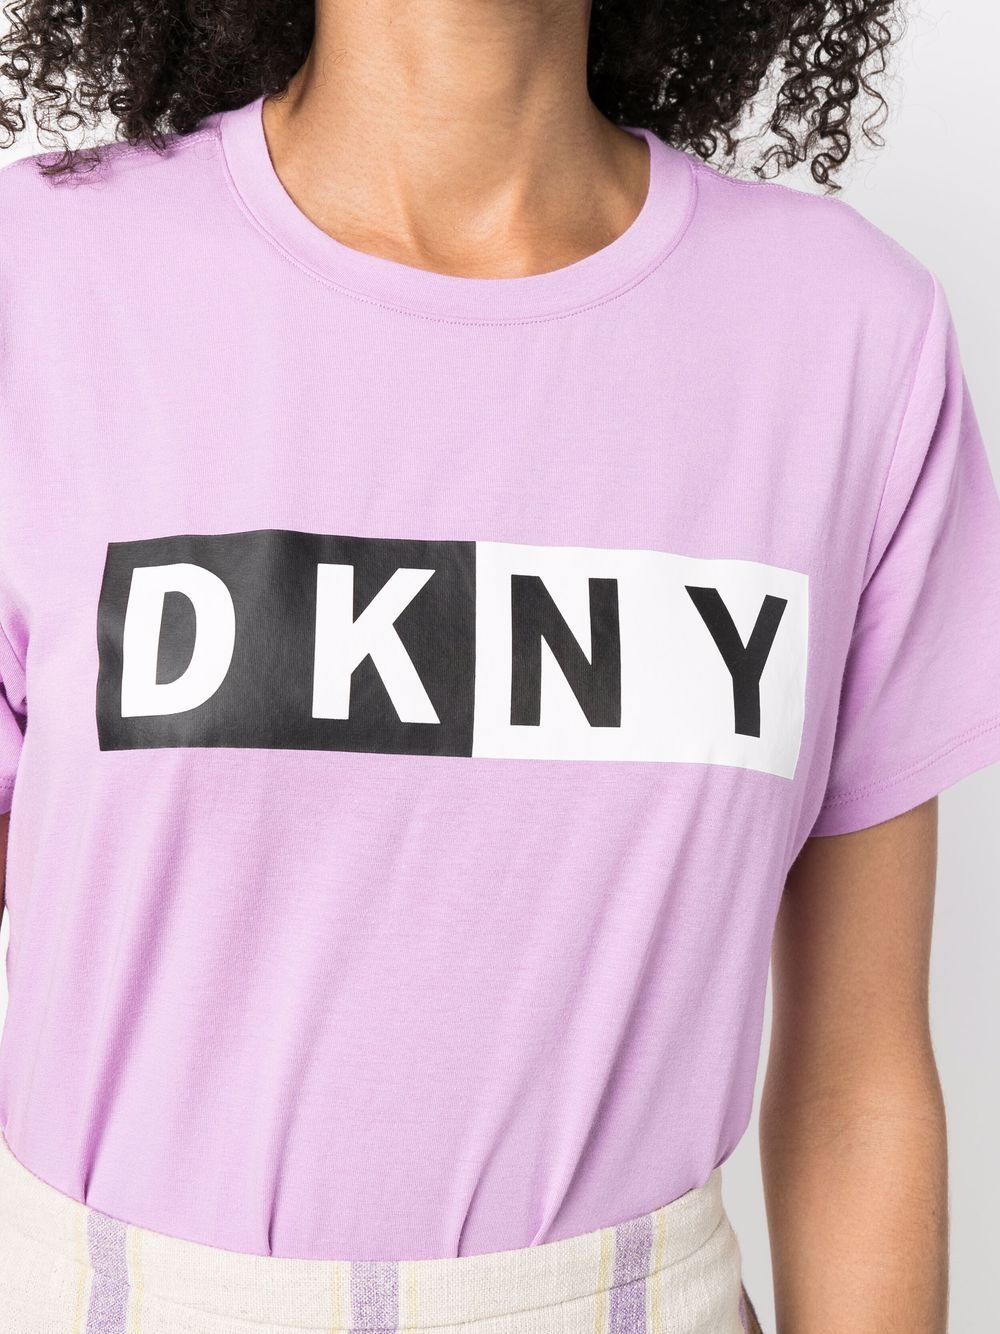 фото Dkny футболка с логотипом